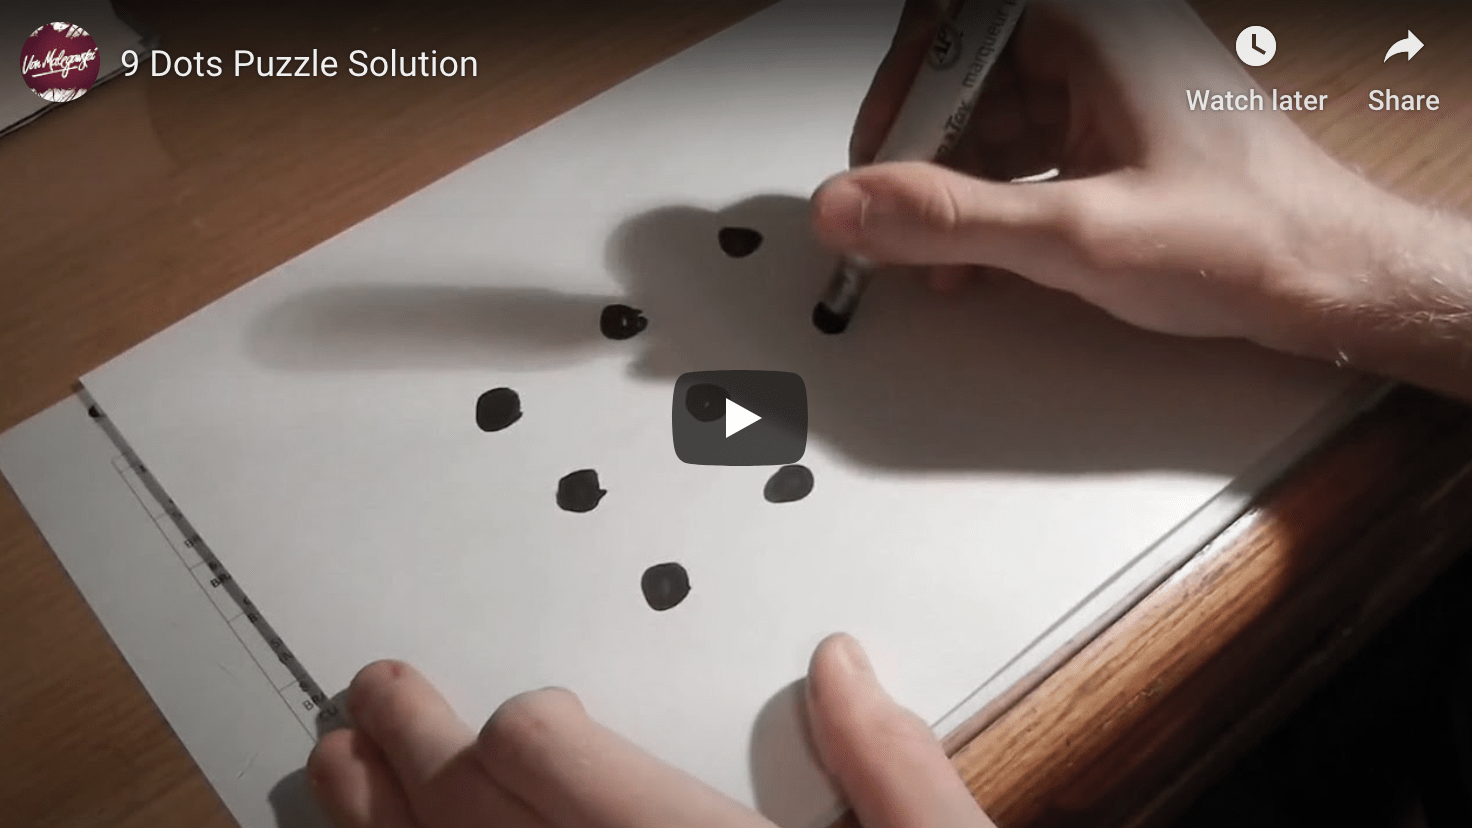 9 Dots Puzzle Solution